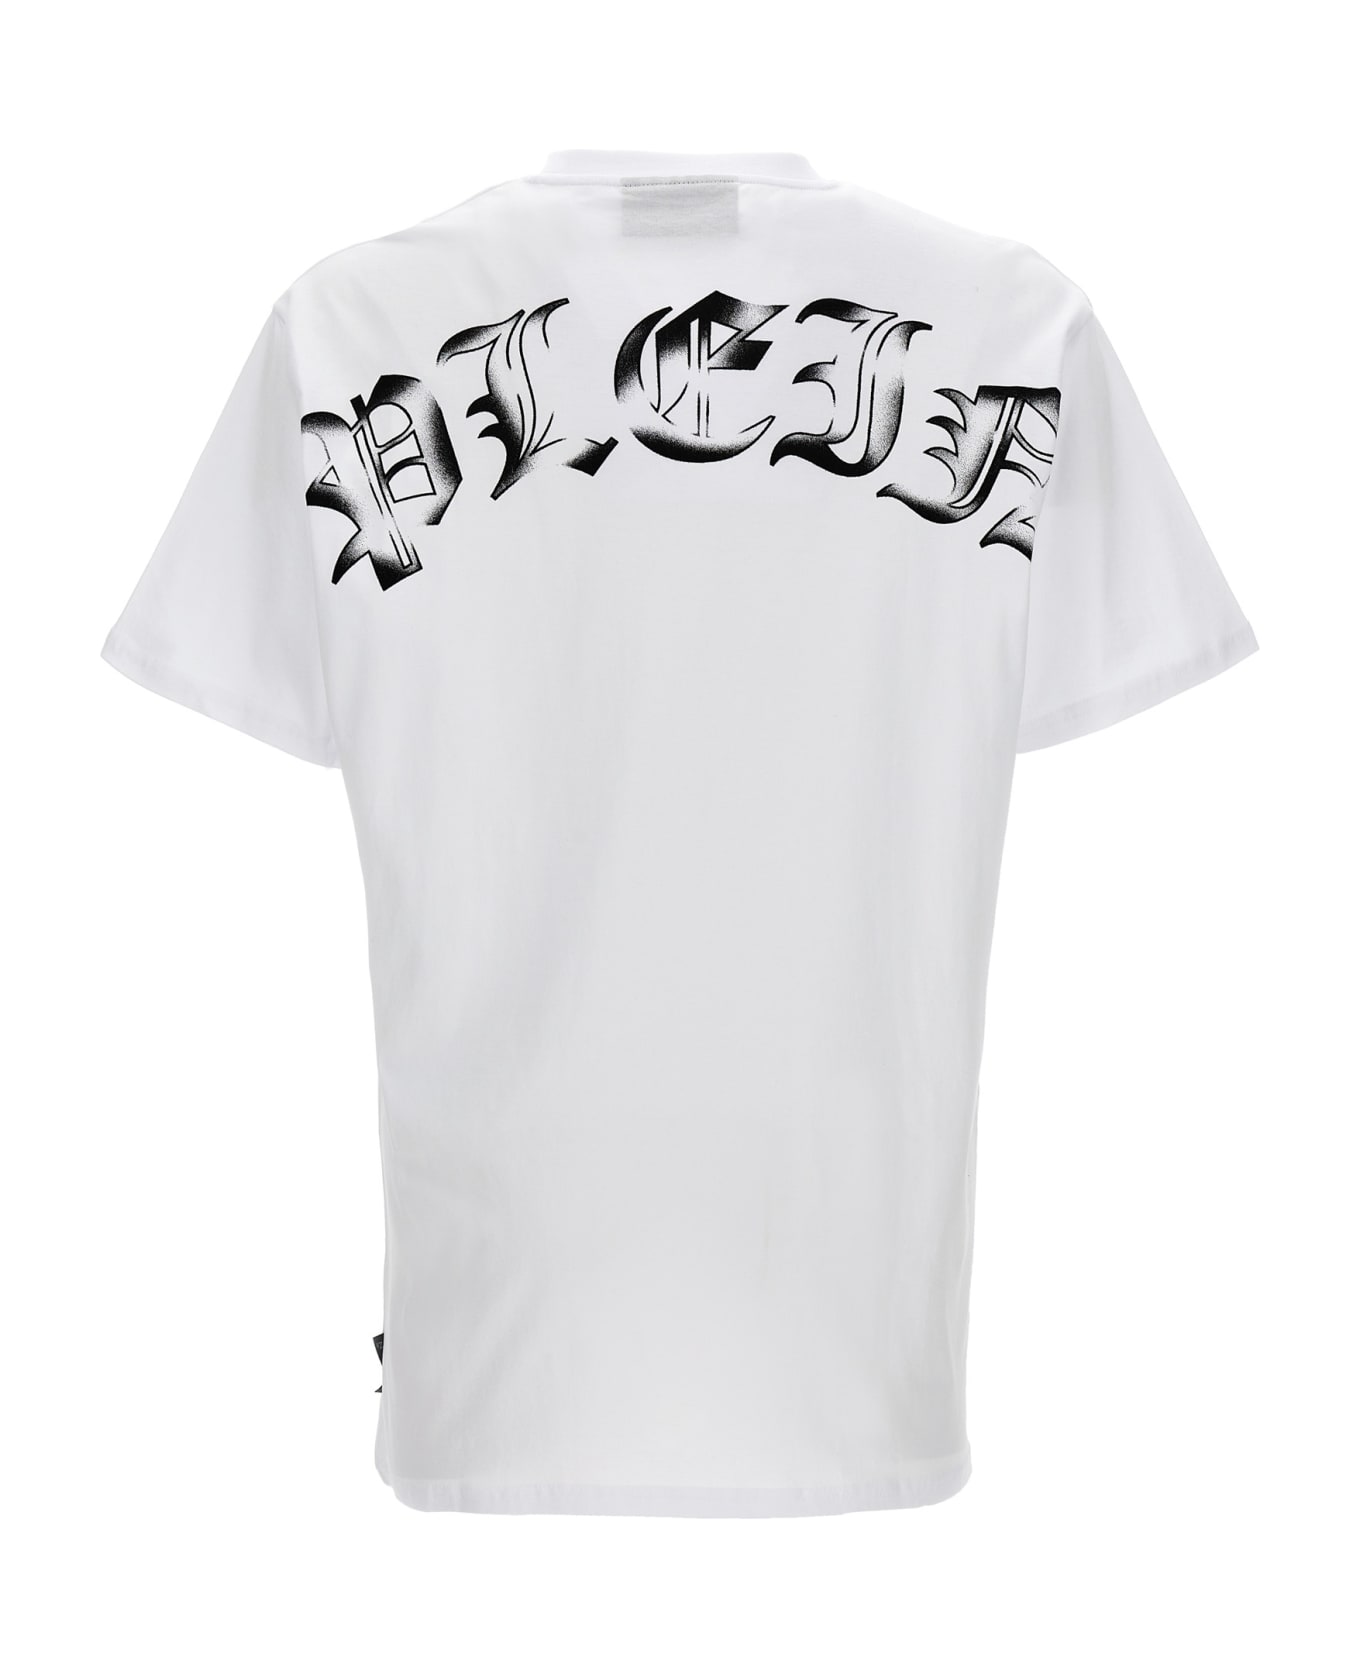 Philipp Plein 'gothic Plein' T-shirt - White/Black シャツ